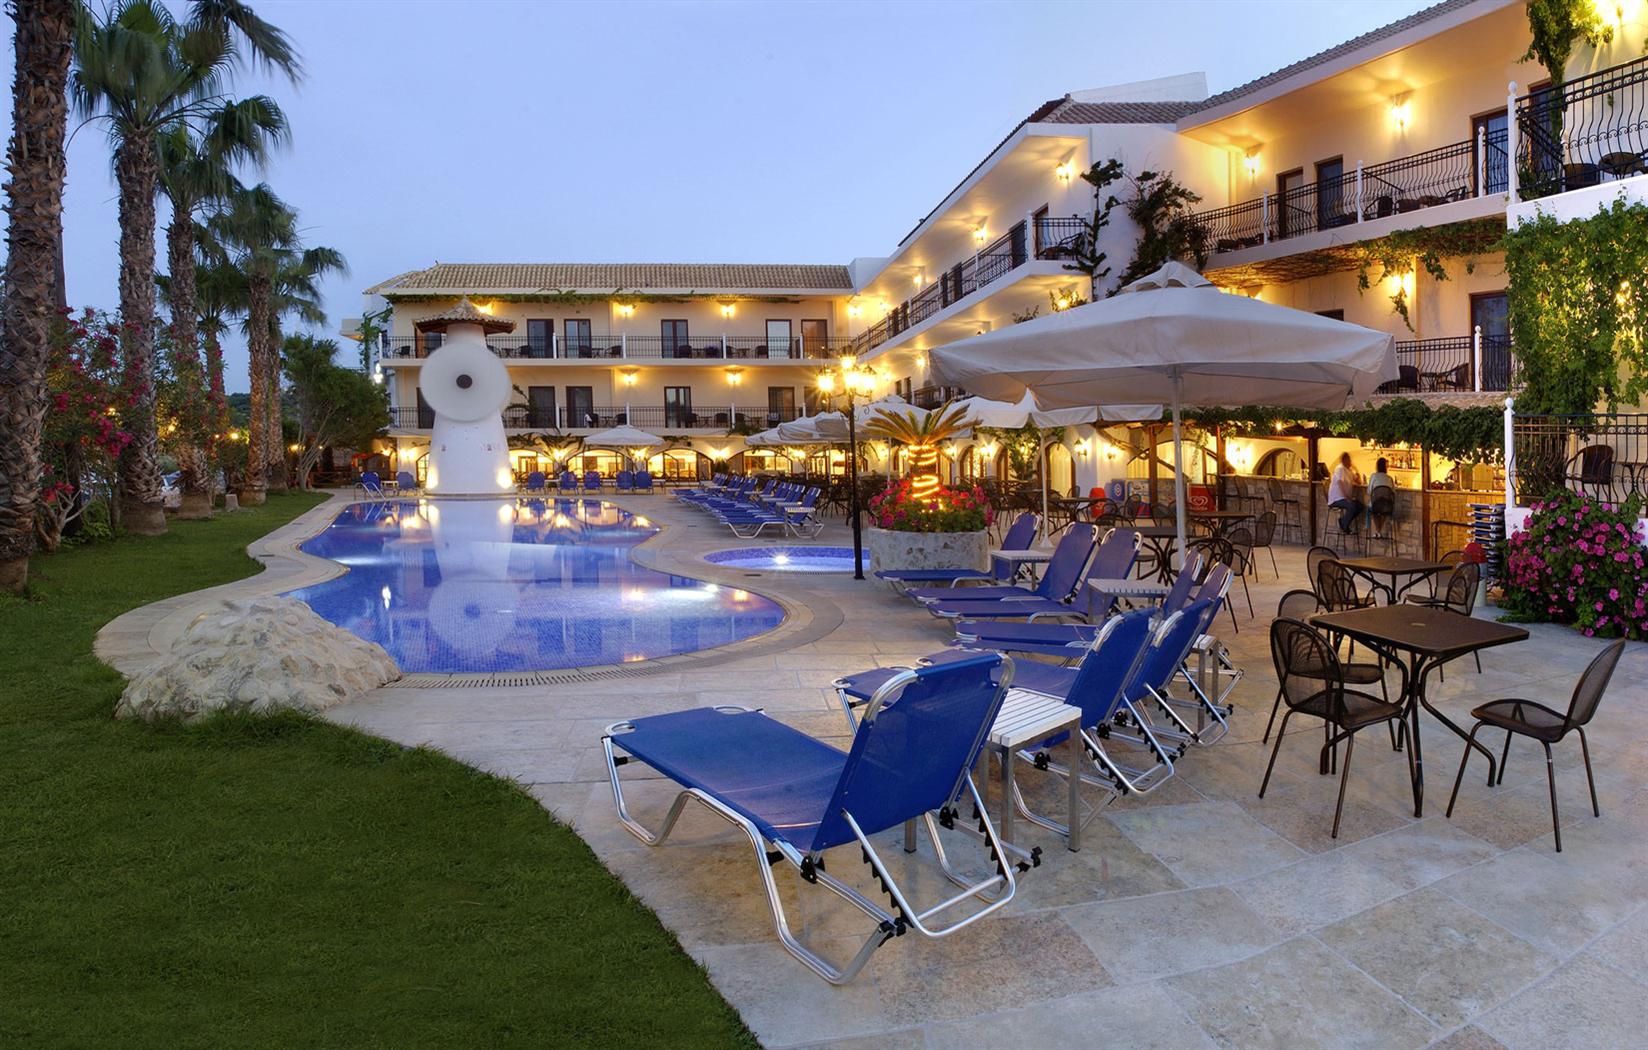 The Almyrida Beach Hotel